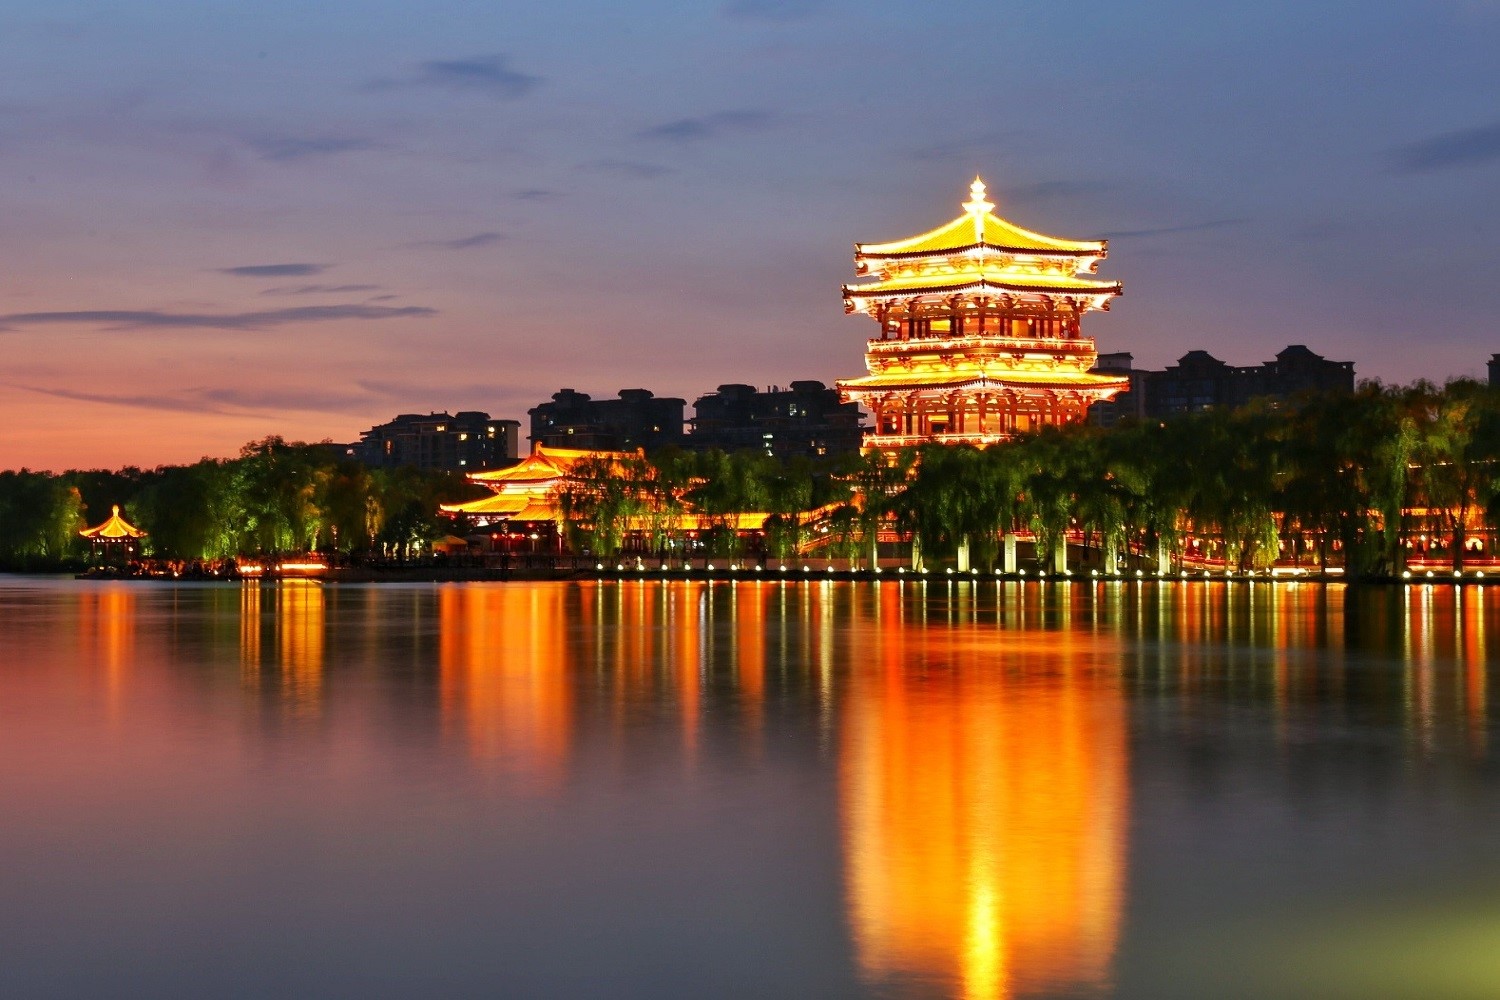 Lotus palace of Tang Dynasty